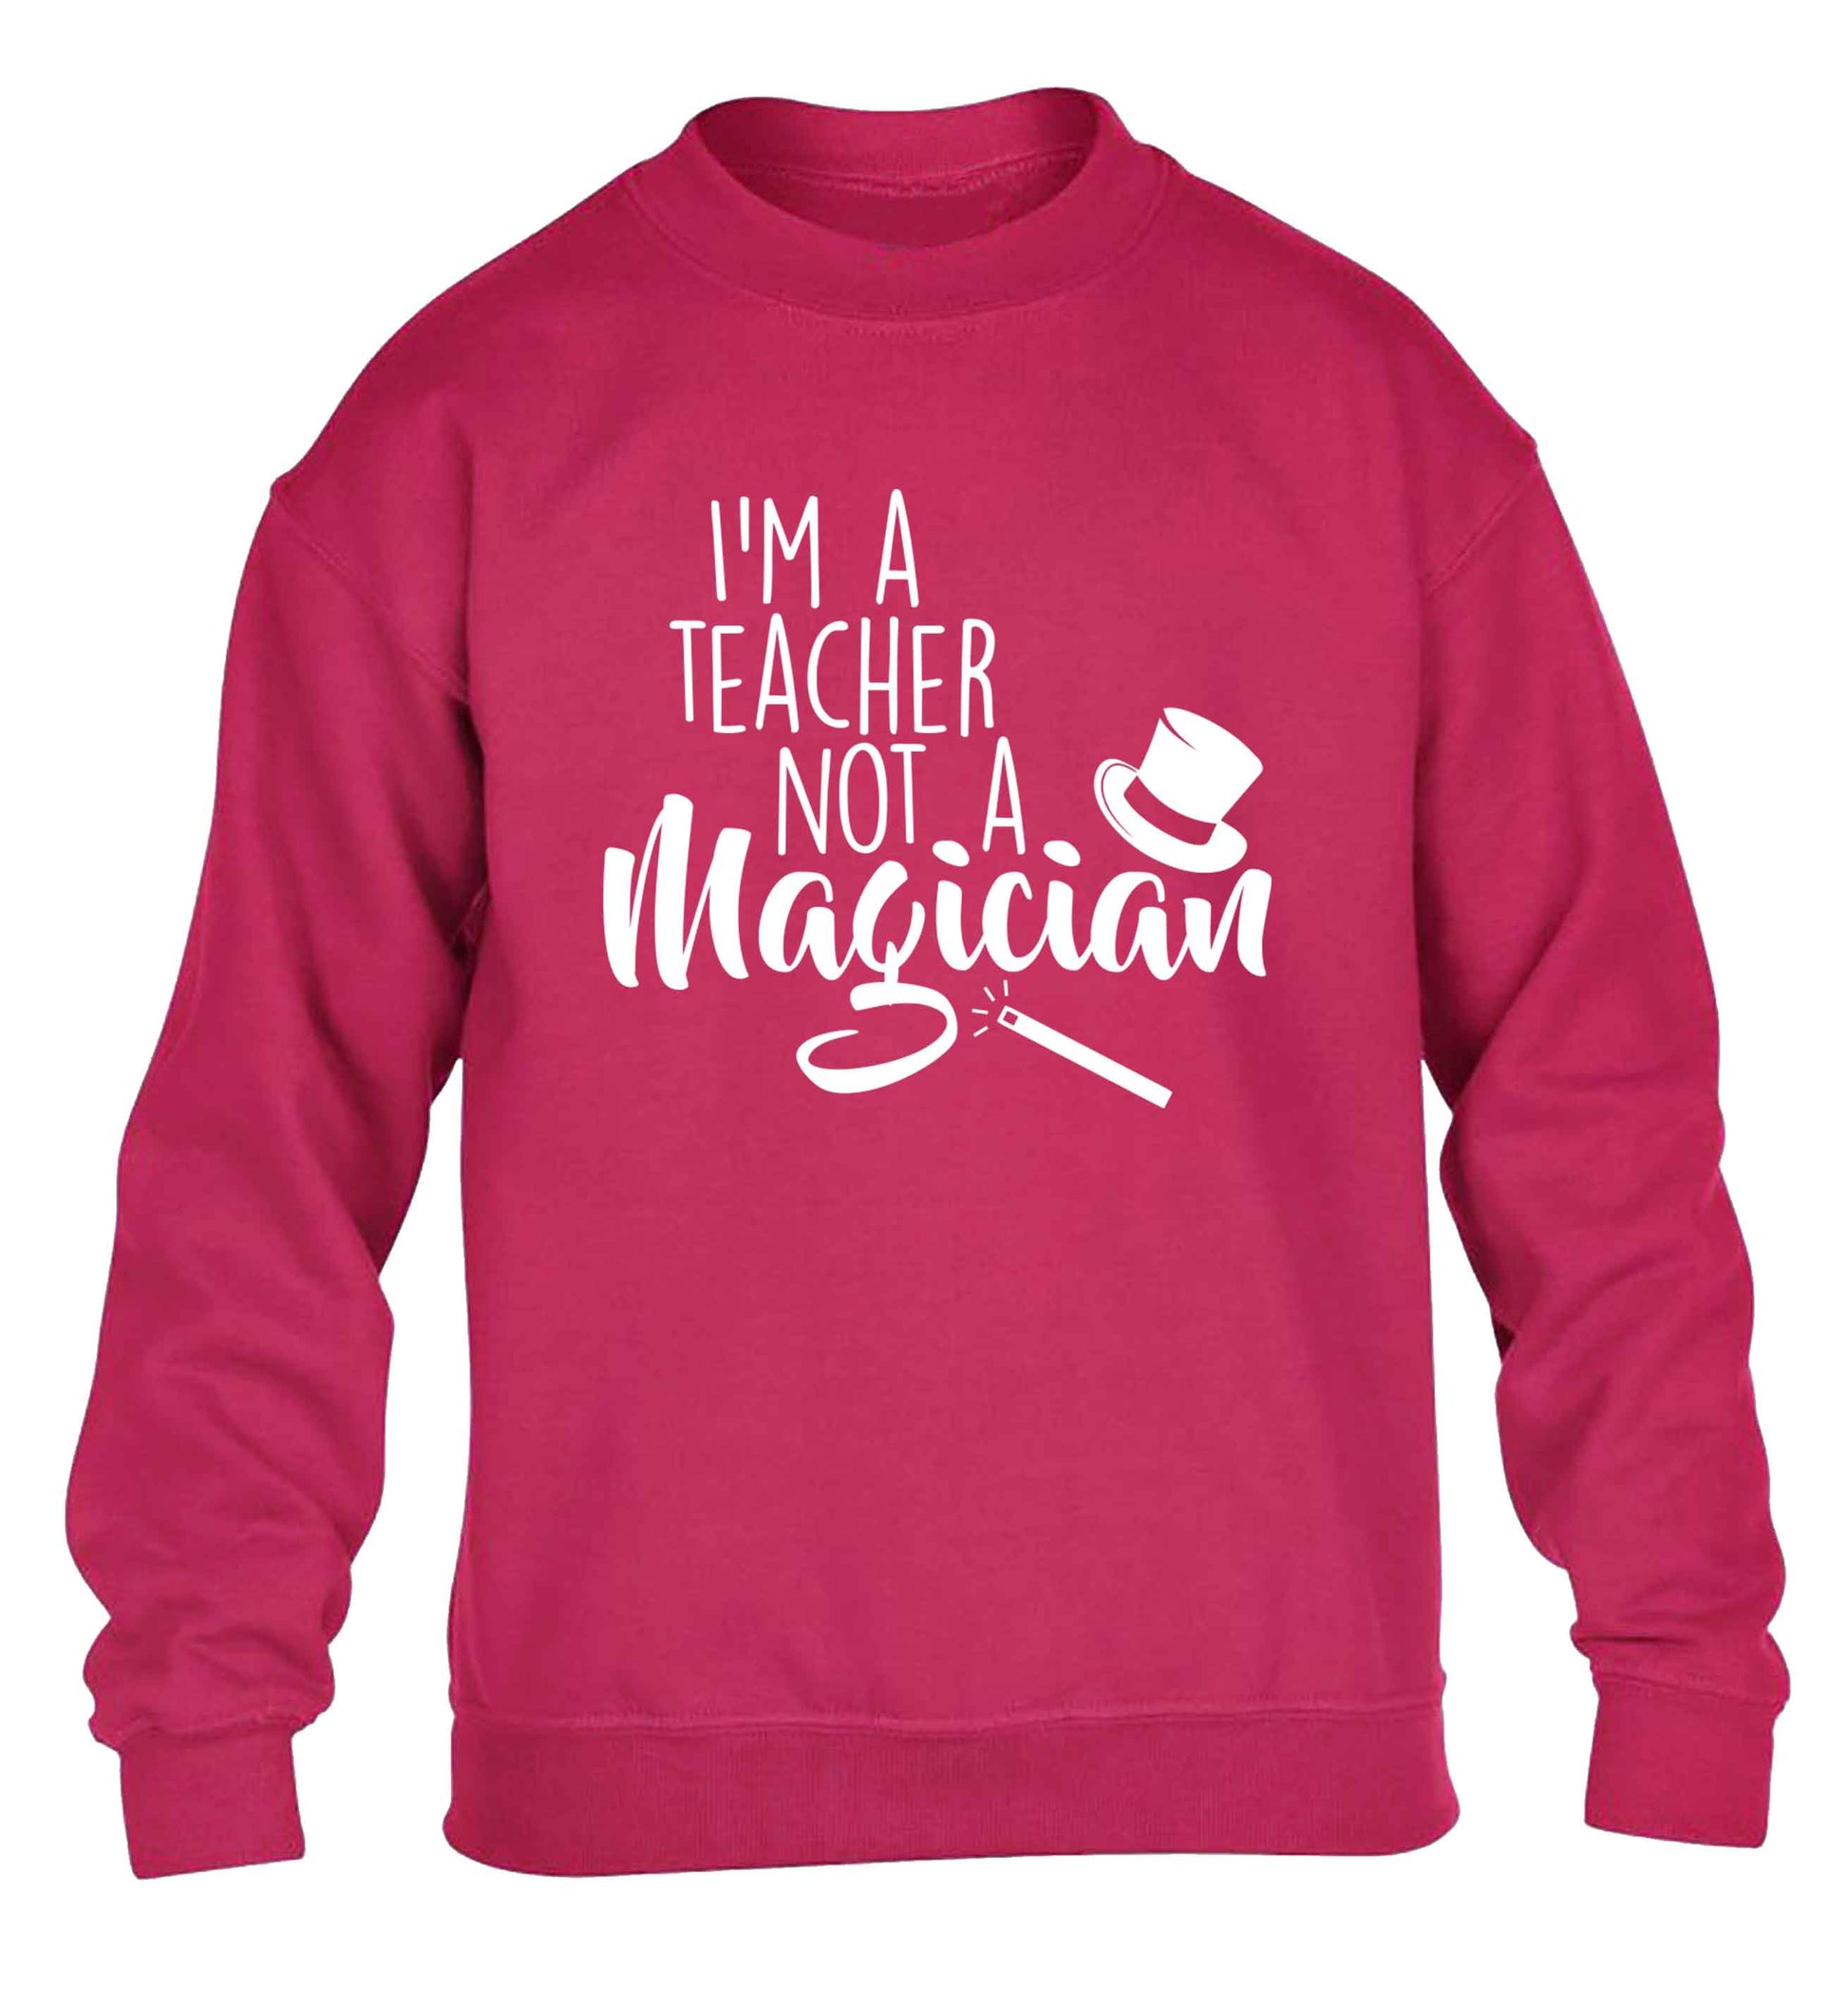 I'm a teacher not a magician children's pink sweater 12-13 Years